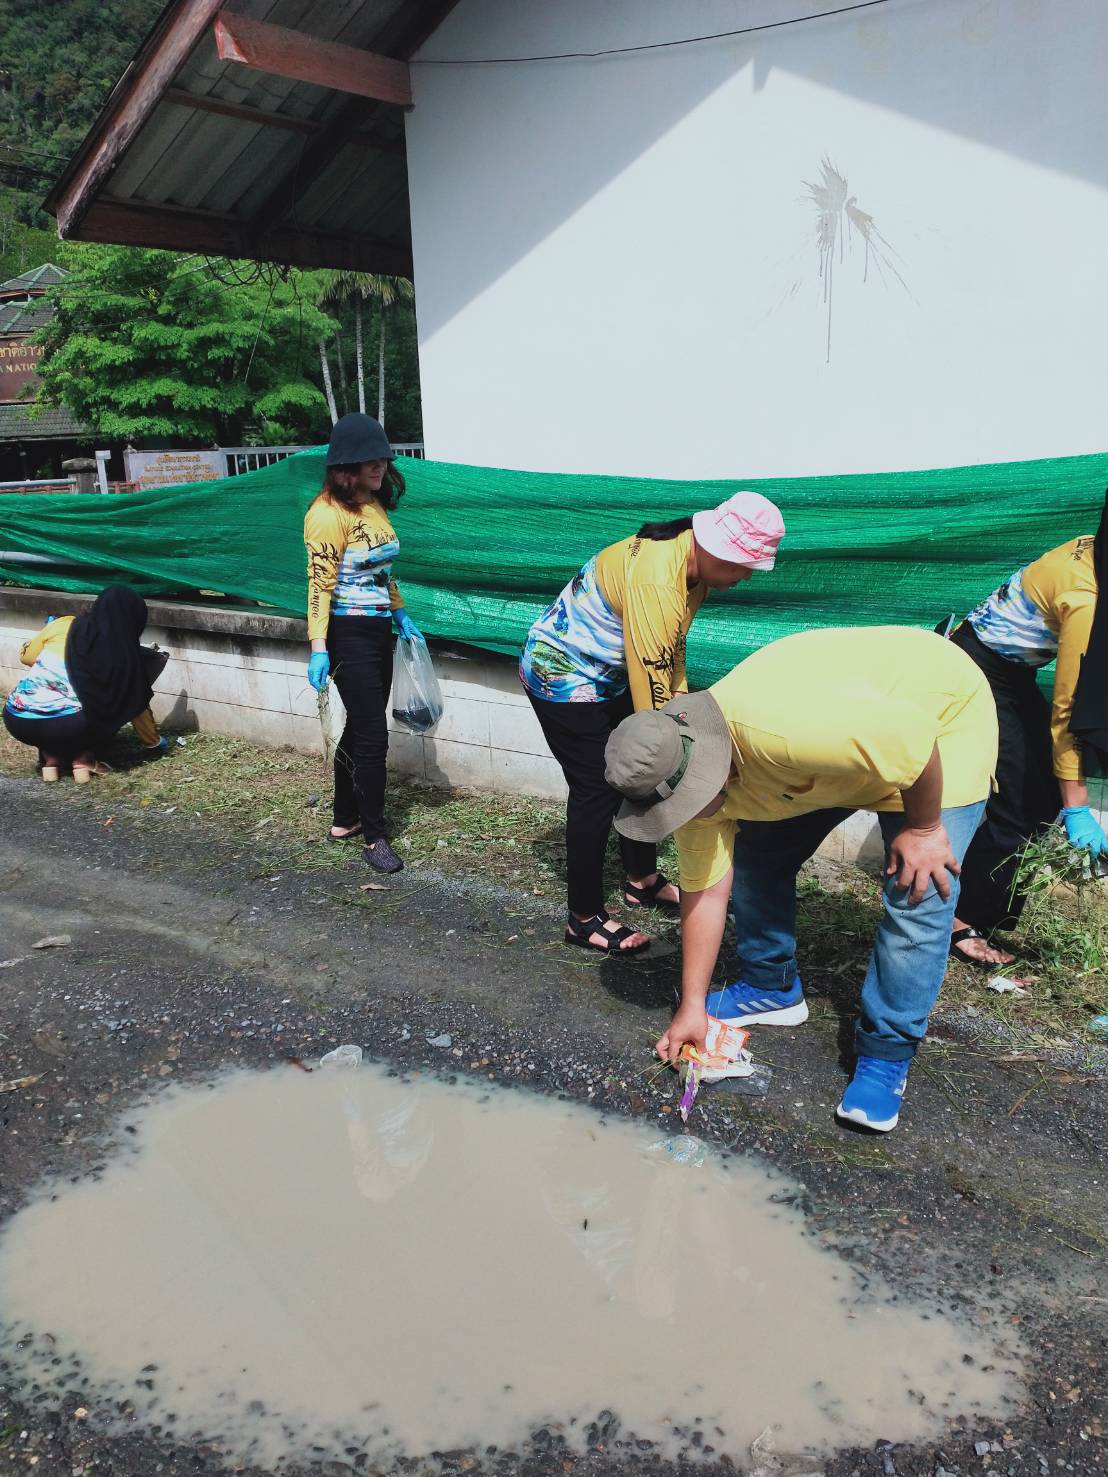 กิจกรรม Big Cleaning Day หมู่ที่ 1 บ้านท่าด่าน ตำบลเกาะปันหยี อำเภอเมือง จังหวัดพังงา เนื่องในวันแม่แห่งชาติ  12 สิงหาคม 2566 